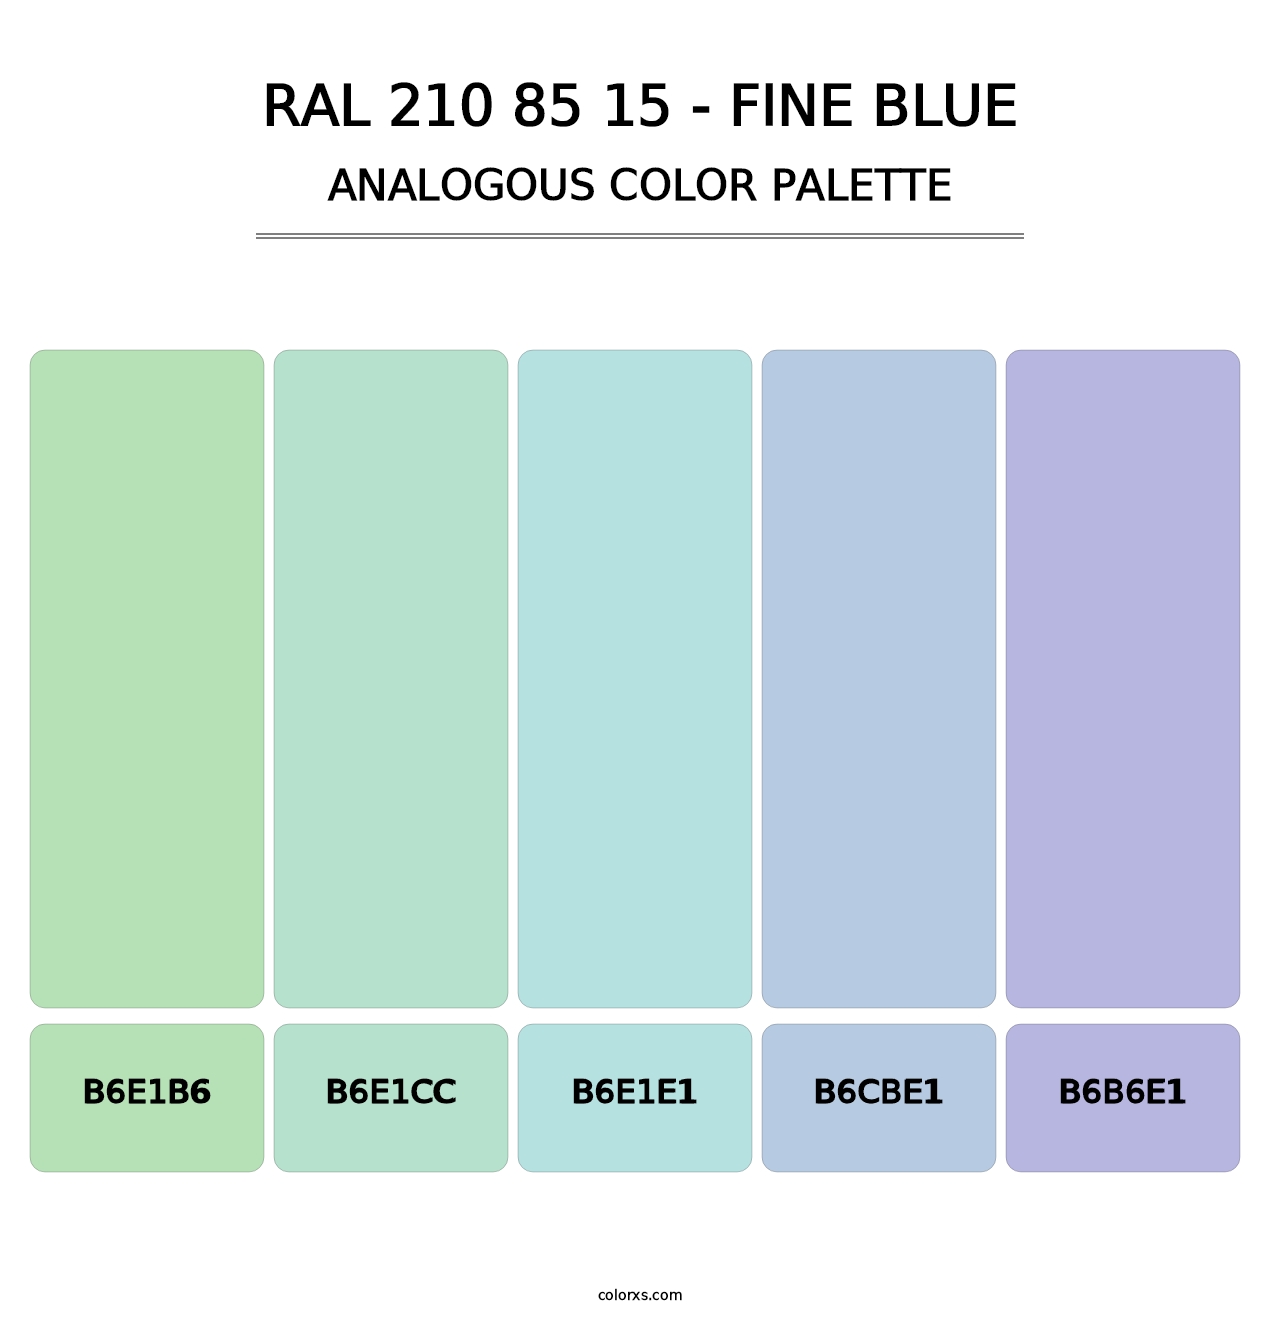 RAL 210 85 15 - Fine Blue - Analogous Color Palette